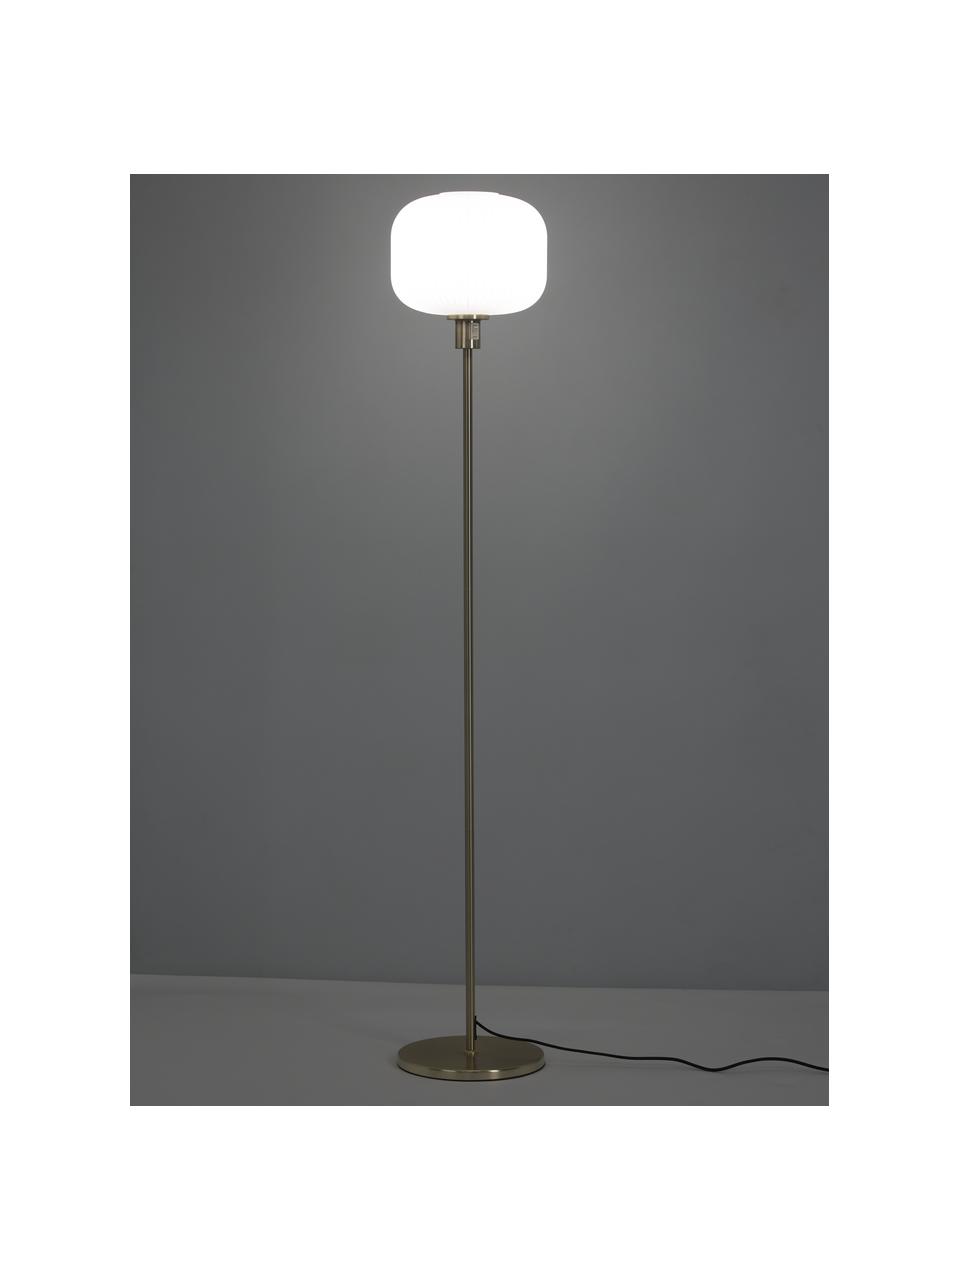 Vloerlamp Sober met glazen lampenkap, Lampenkap: opaalglas, Lampvoet: geborsteld metaal, Wit, goudkleurig, Ø 25 x H 141 cm